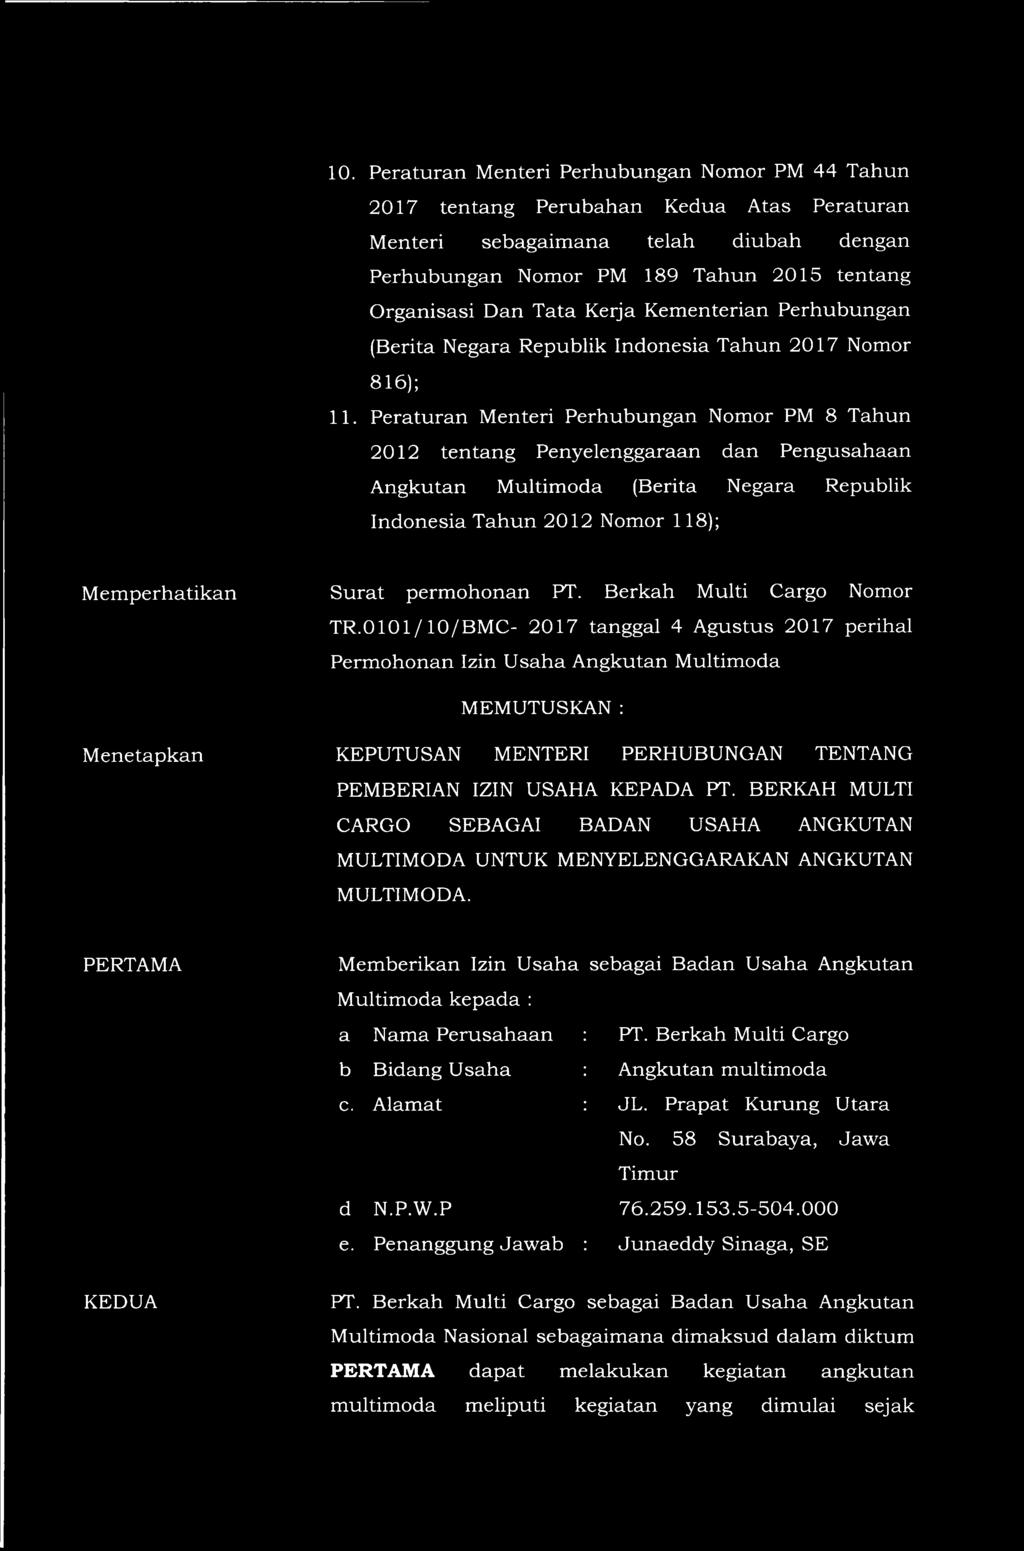 Peraturan Menteri Perhubungan Nomor PM 8 Tahun 2012 tentang Penyelenggaraan dan Pengusahaan Angkutan Multimoda (Berita Negara Republik Indonesia Tahun 2012 Nomor 118); Memperhatikan Surat permohonan